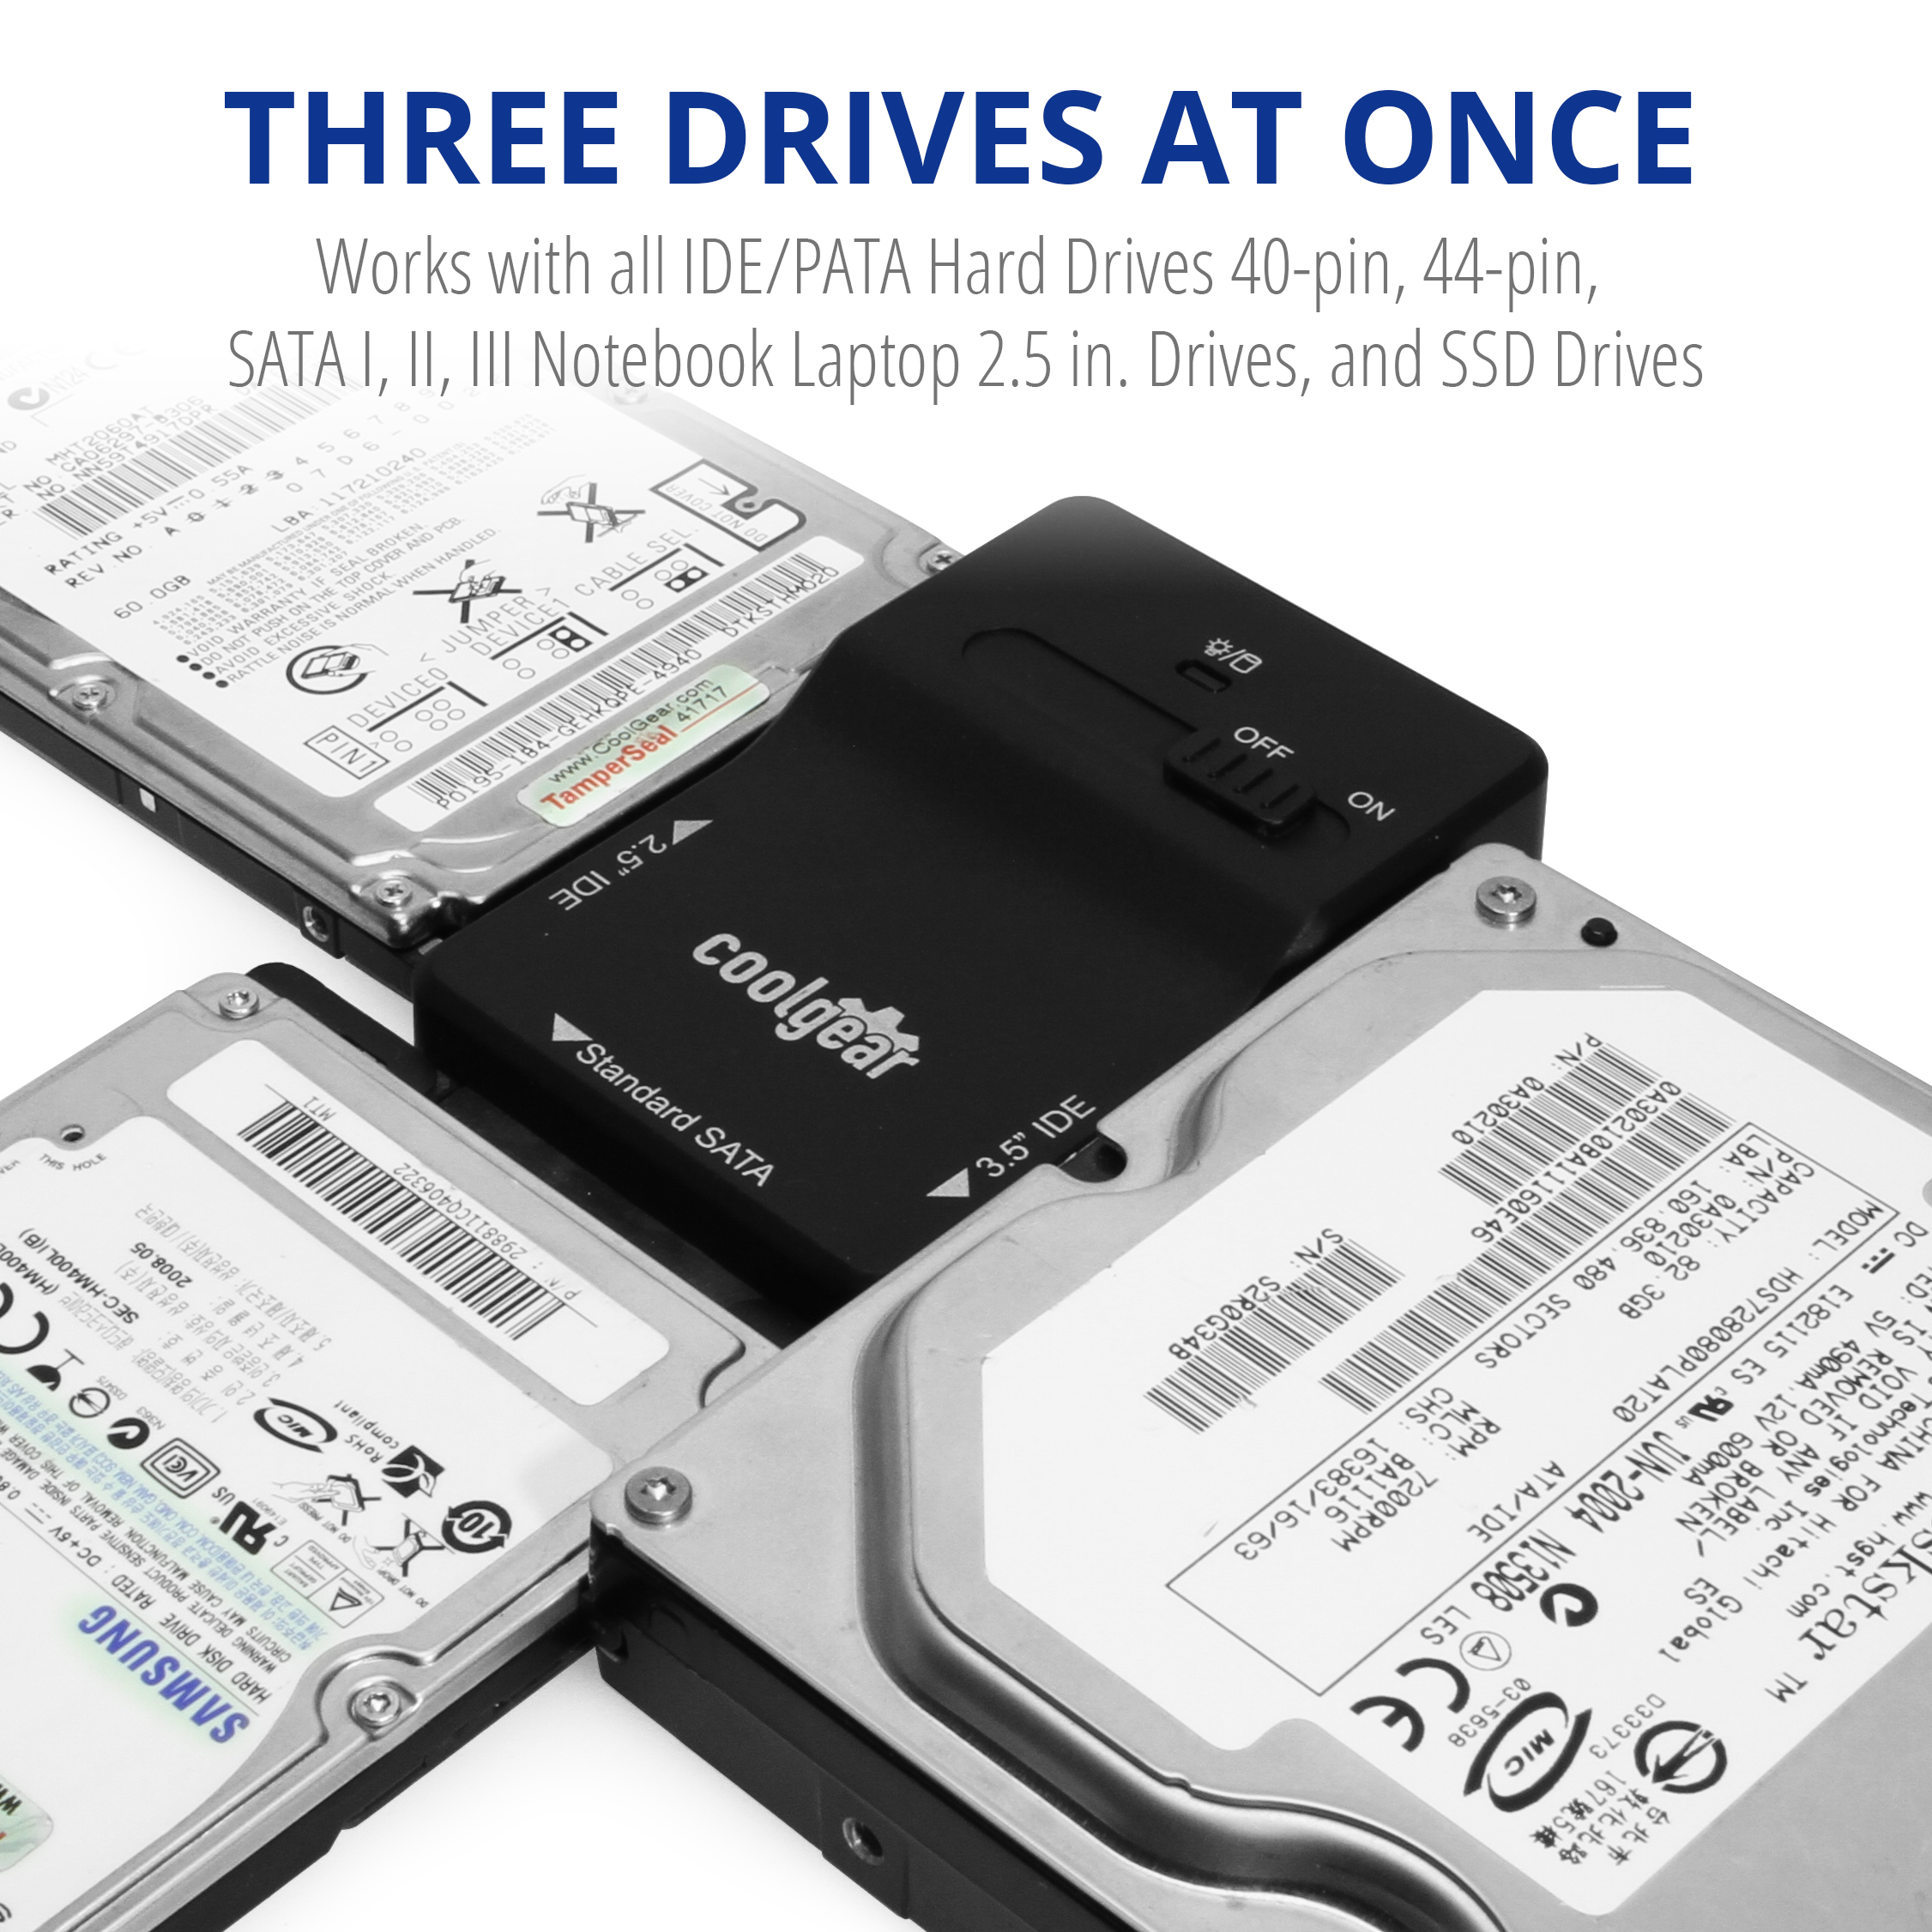 Fordøjelsesorgan søster klasse USB 3.0 to SATA or PATA Hard Drive Adapter - Coolgear